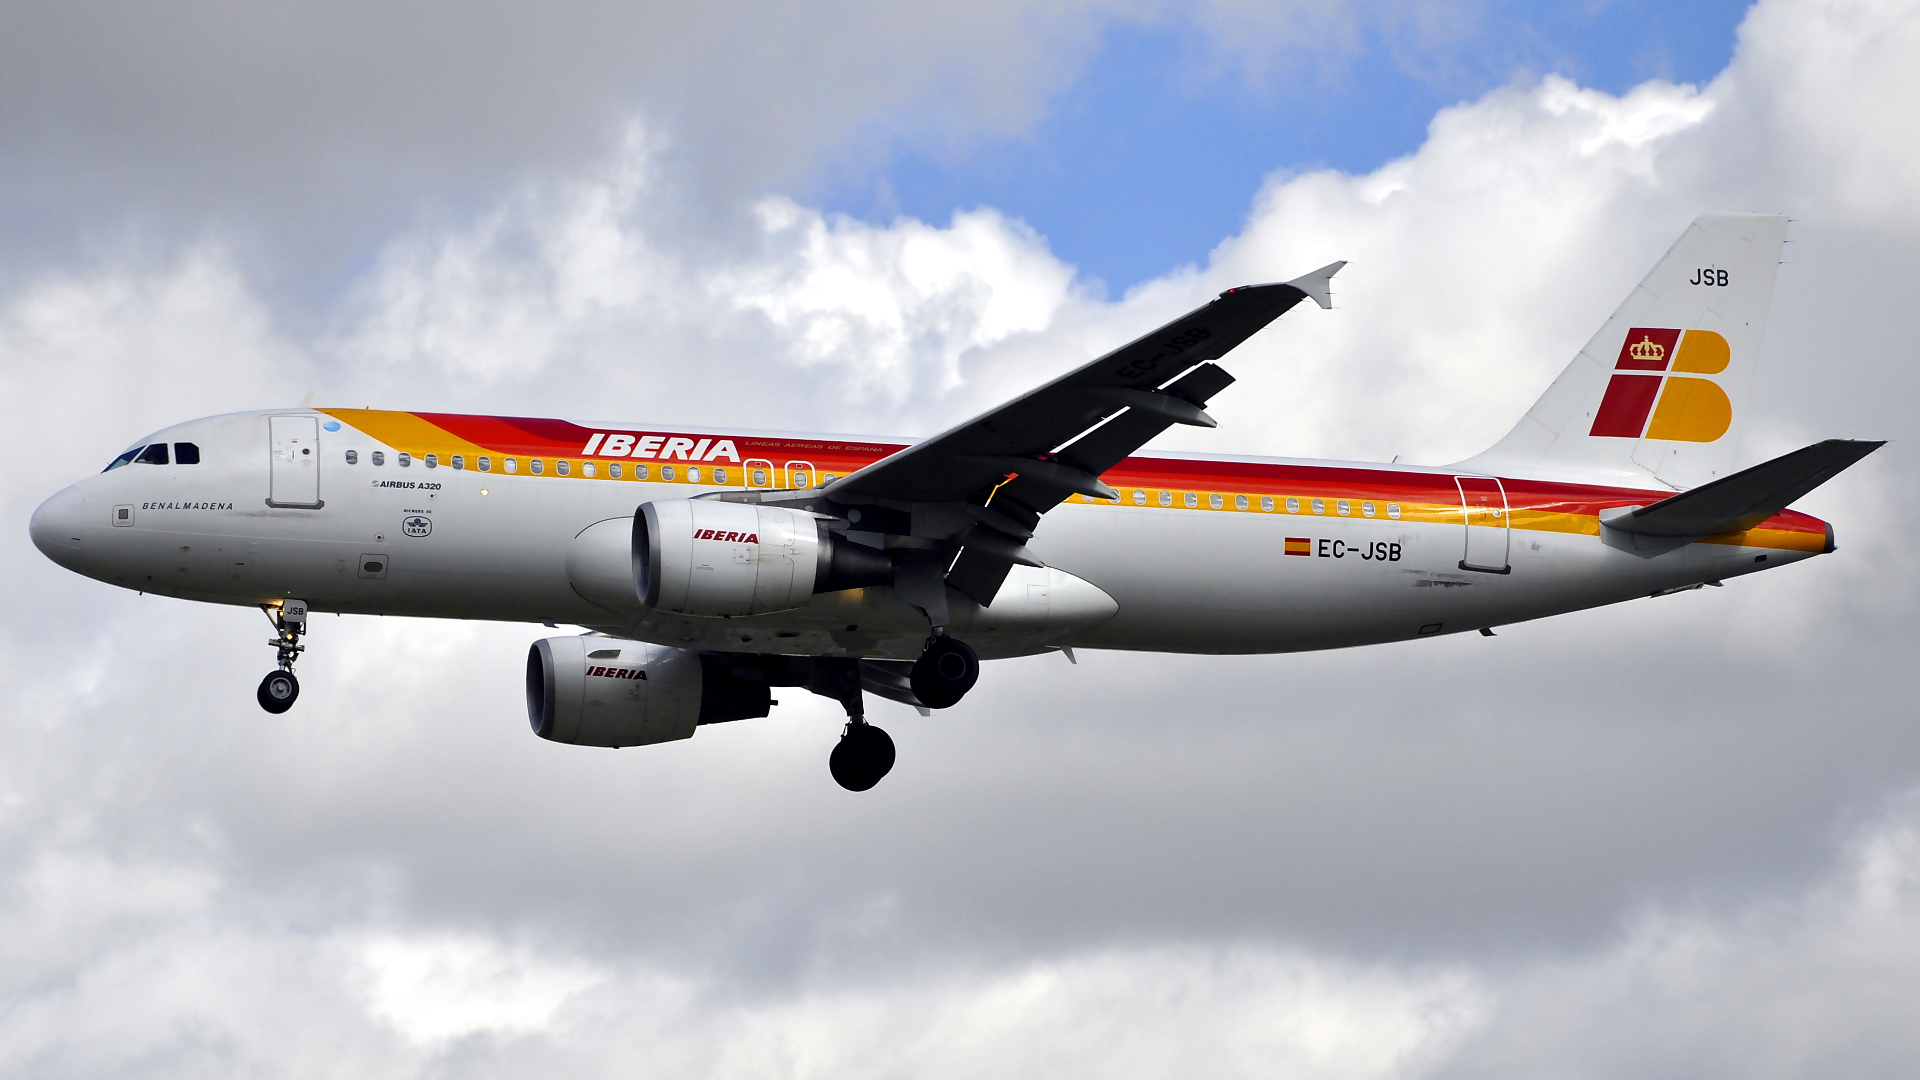 EC-JSB ✈ Iberia Airlines Airbus 320-214 @ London-Heathrow